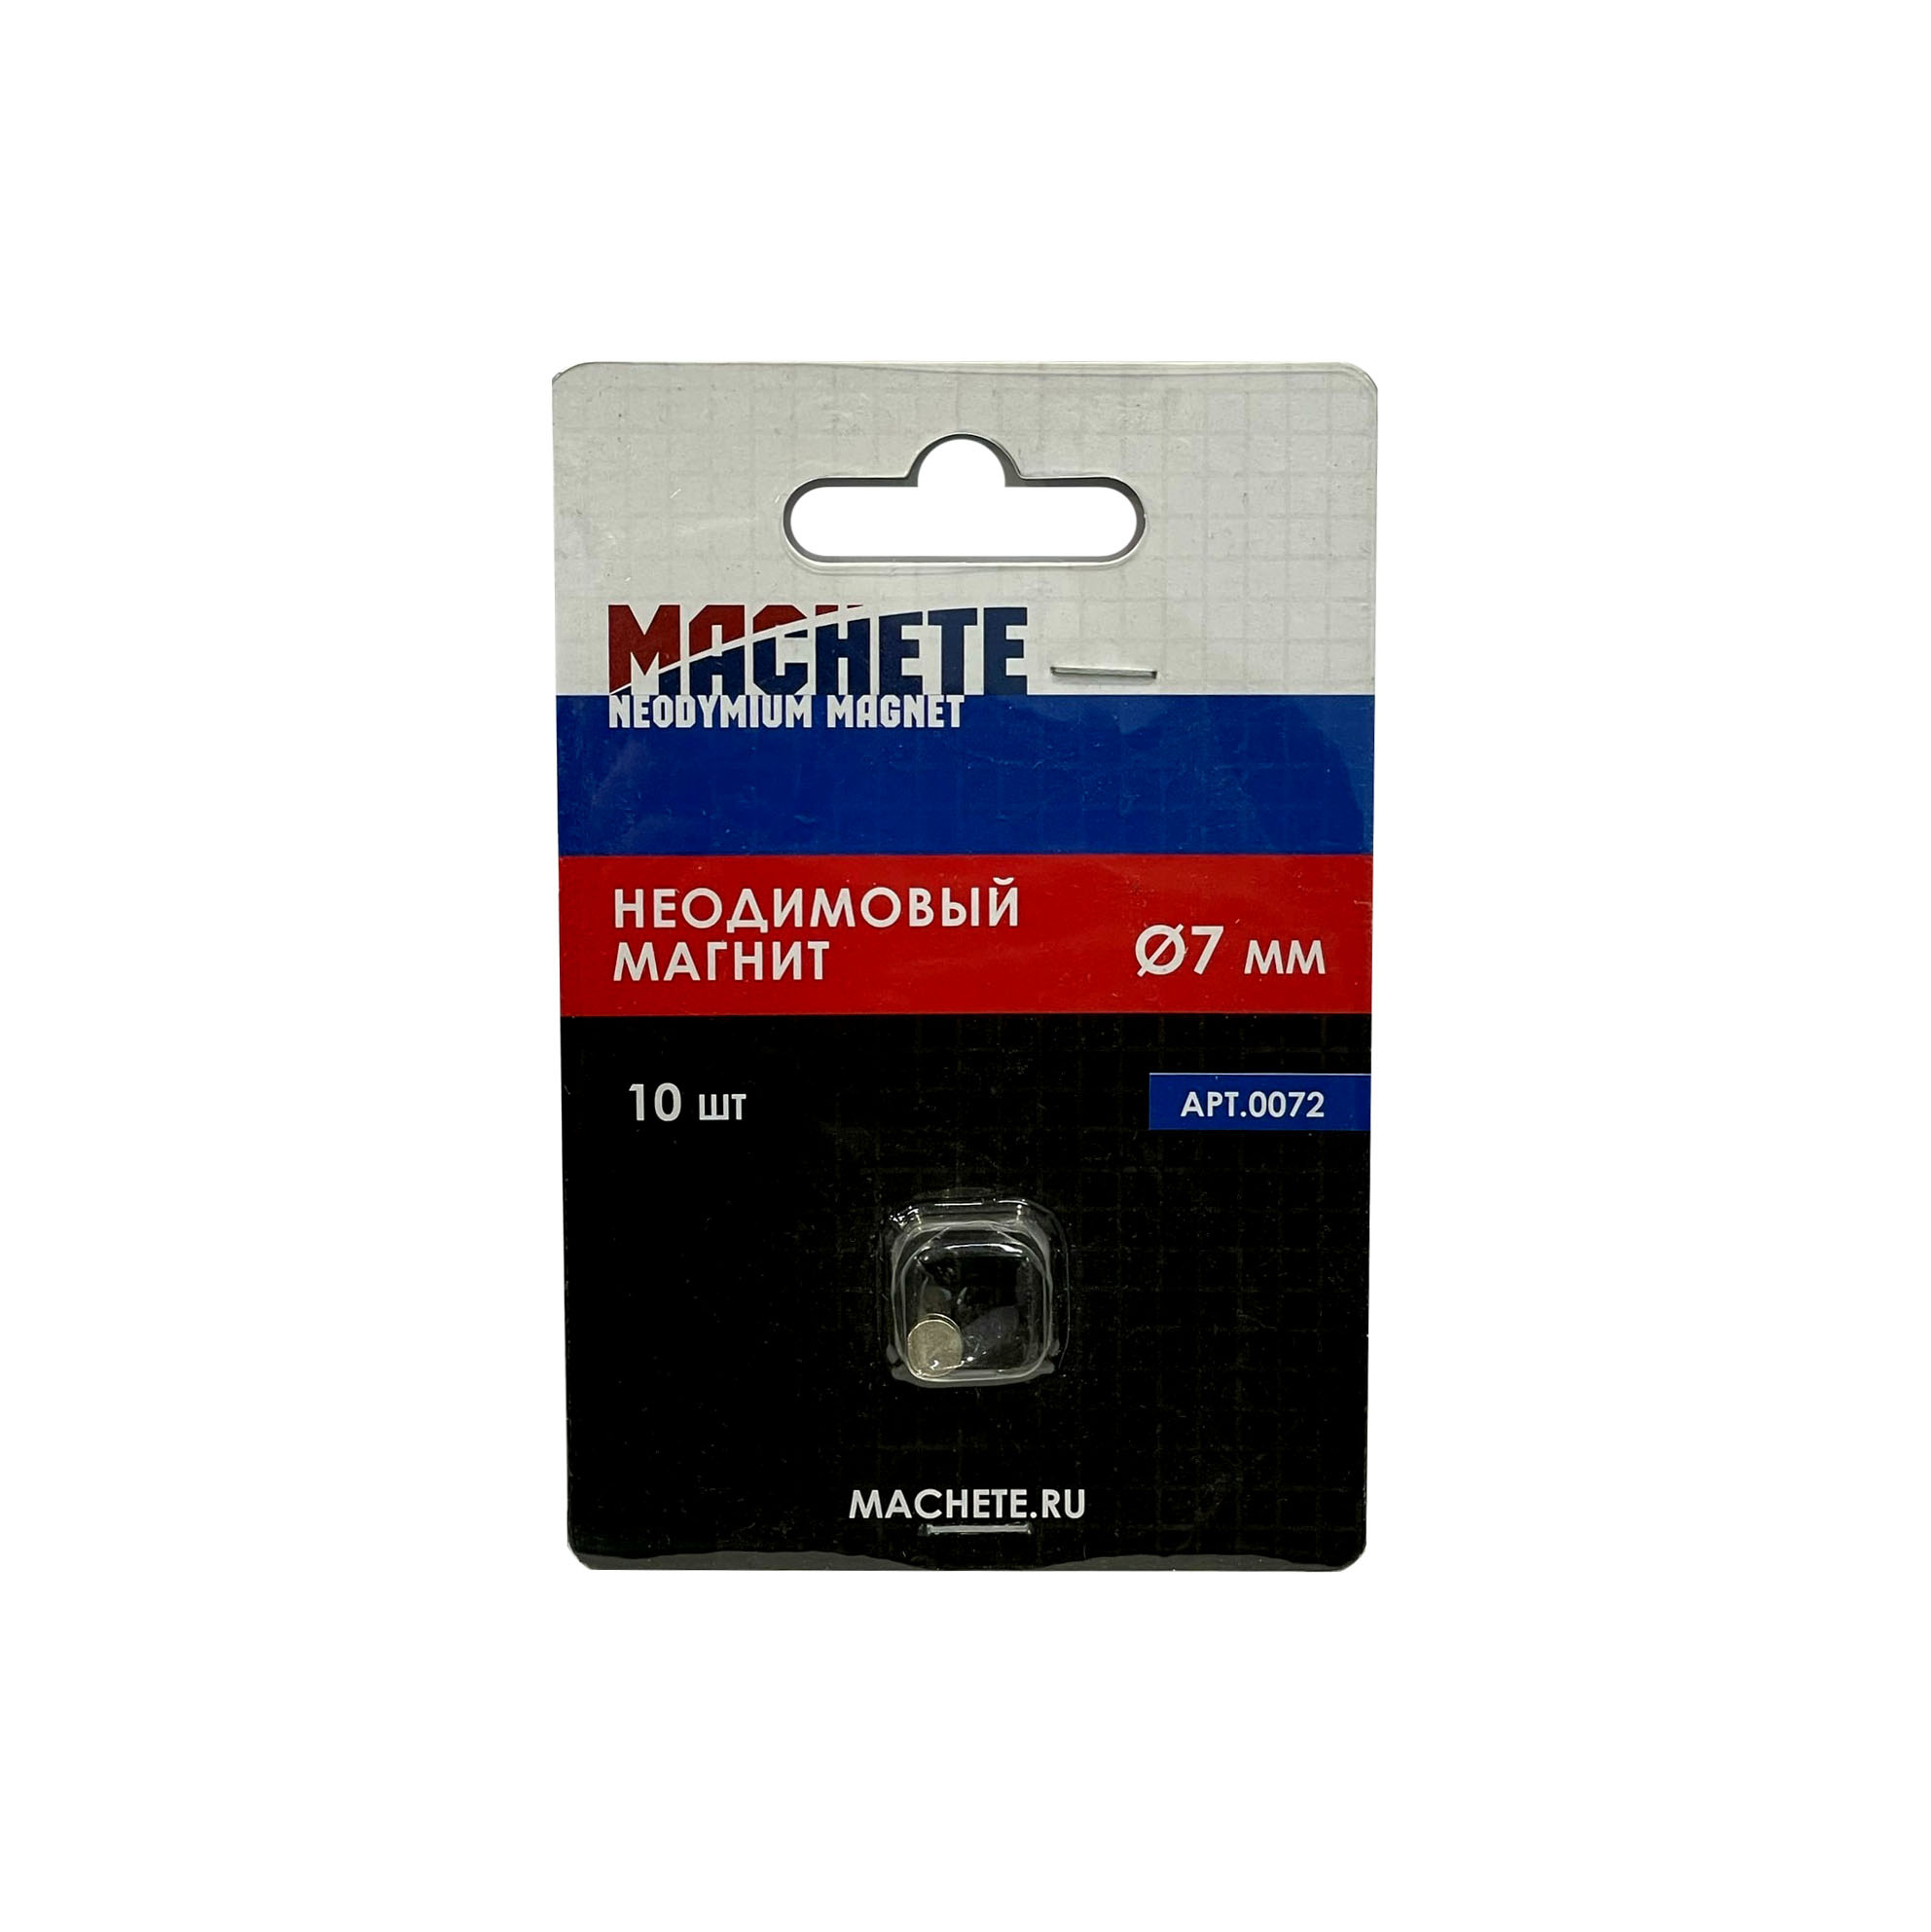 0072 MACHETE Neodymium Magnet 7 mm, 10 pcs